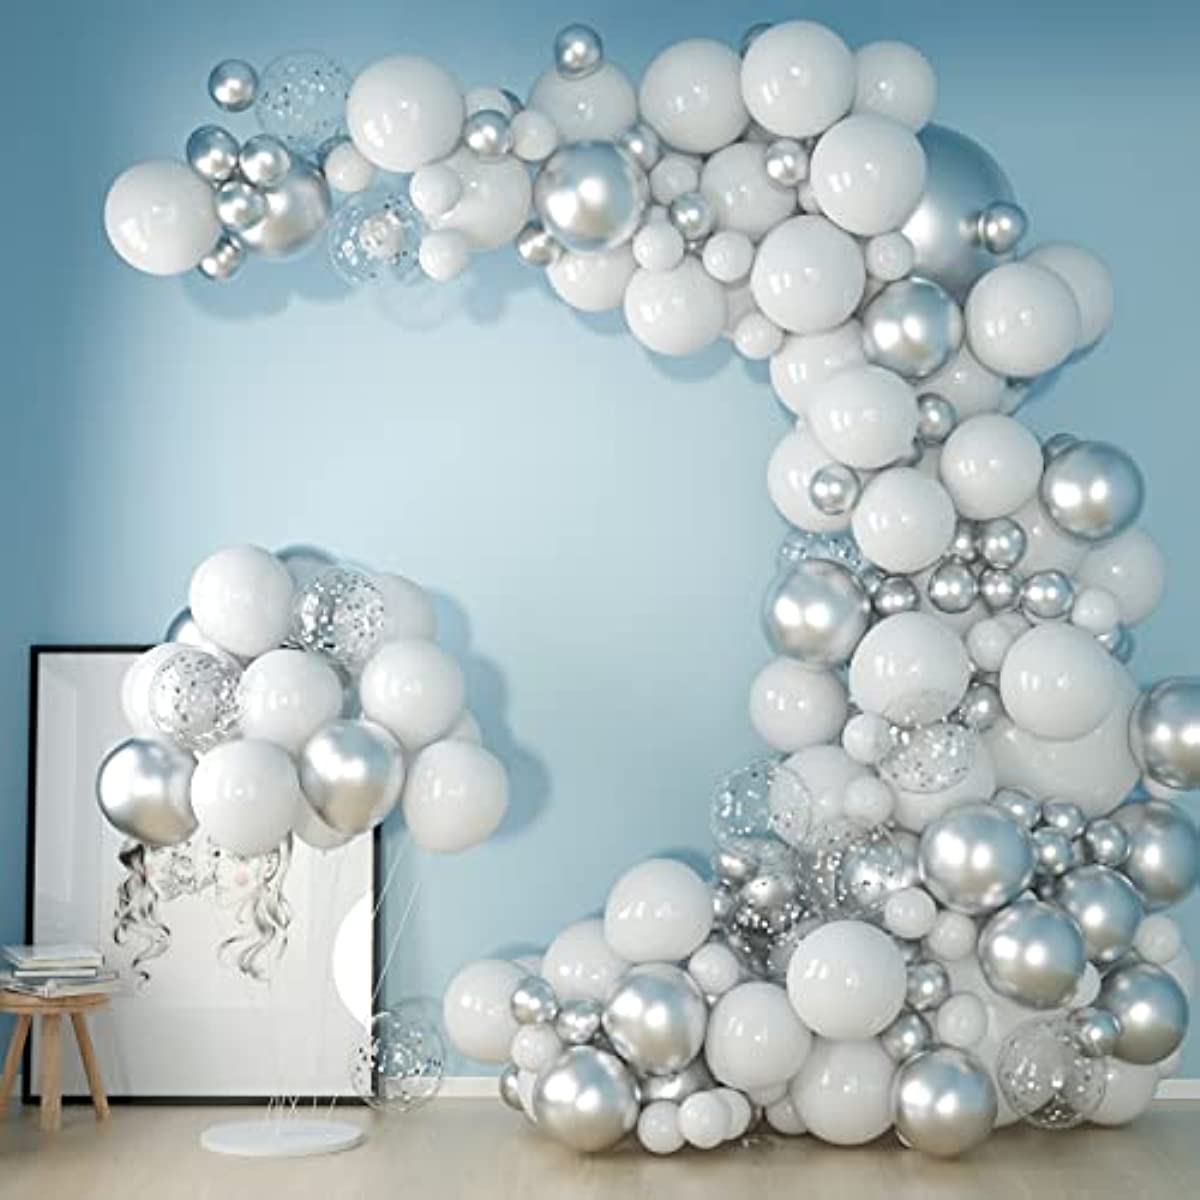 Palloncini argento e bianco, 30,5 cm, in lattice bianco e argento  metallizzato, decorazione con coriandoli argentati, palloncini a elio per  ragazzi e